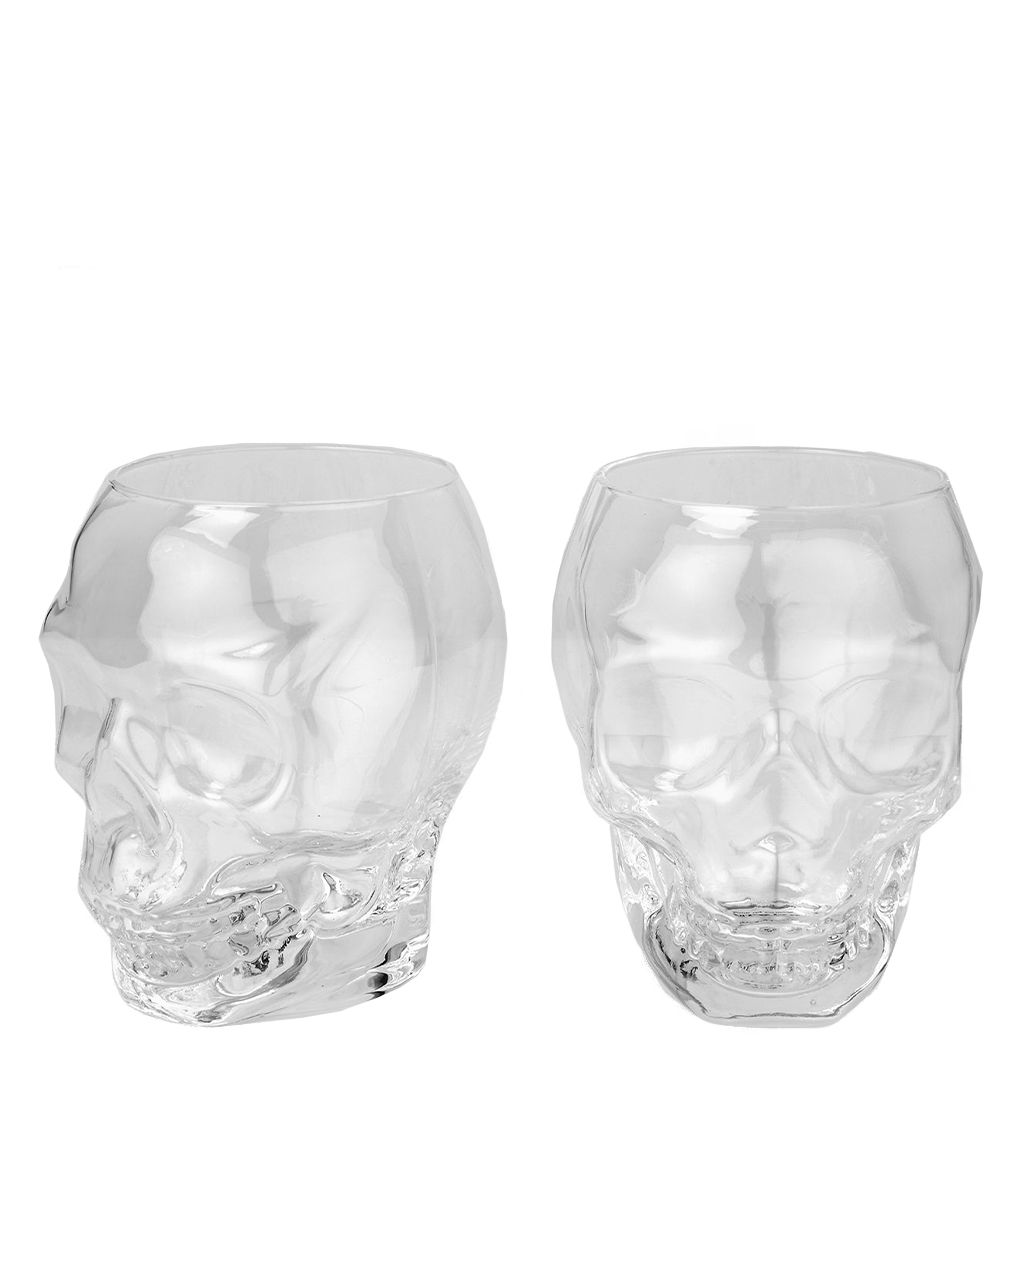 KILLSTAR Cranium Shot Glasses Set Of 2 | Shot glasses | Horror-Shop.com